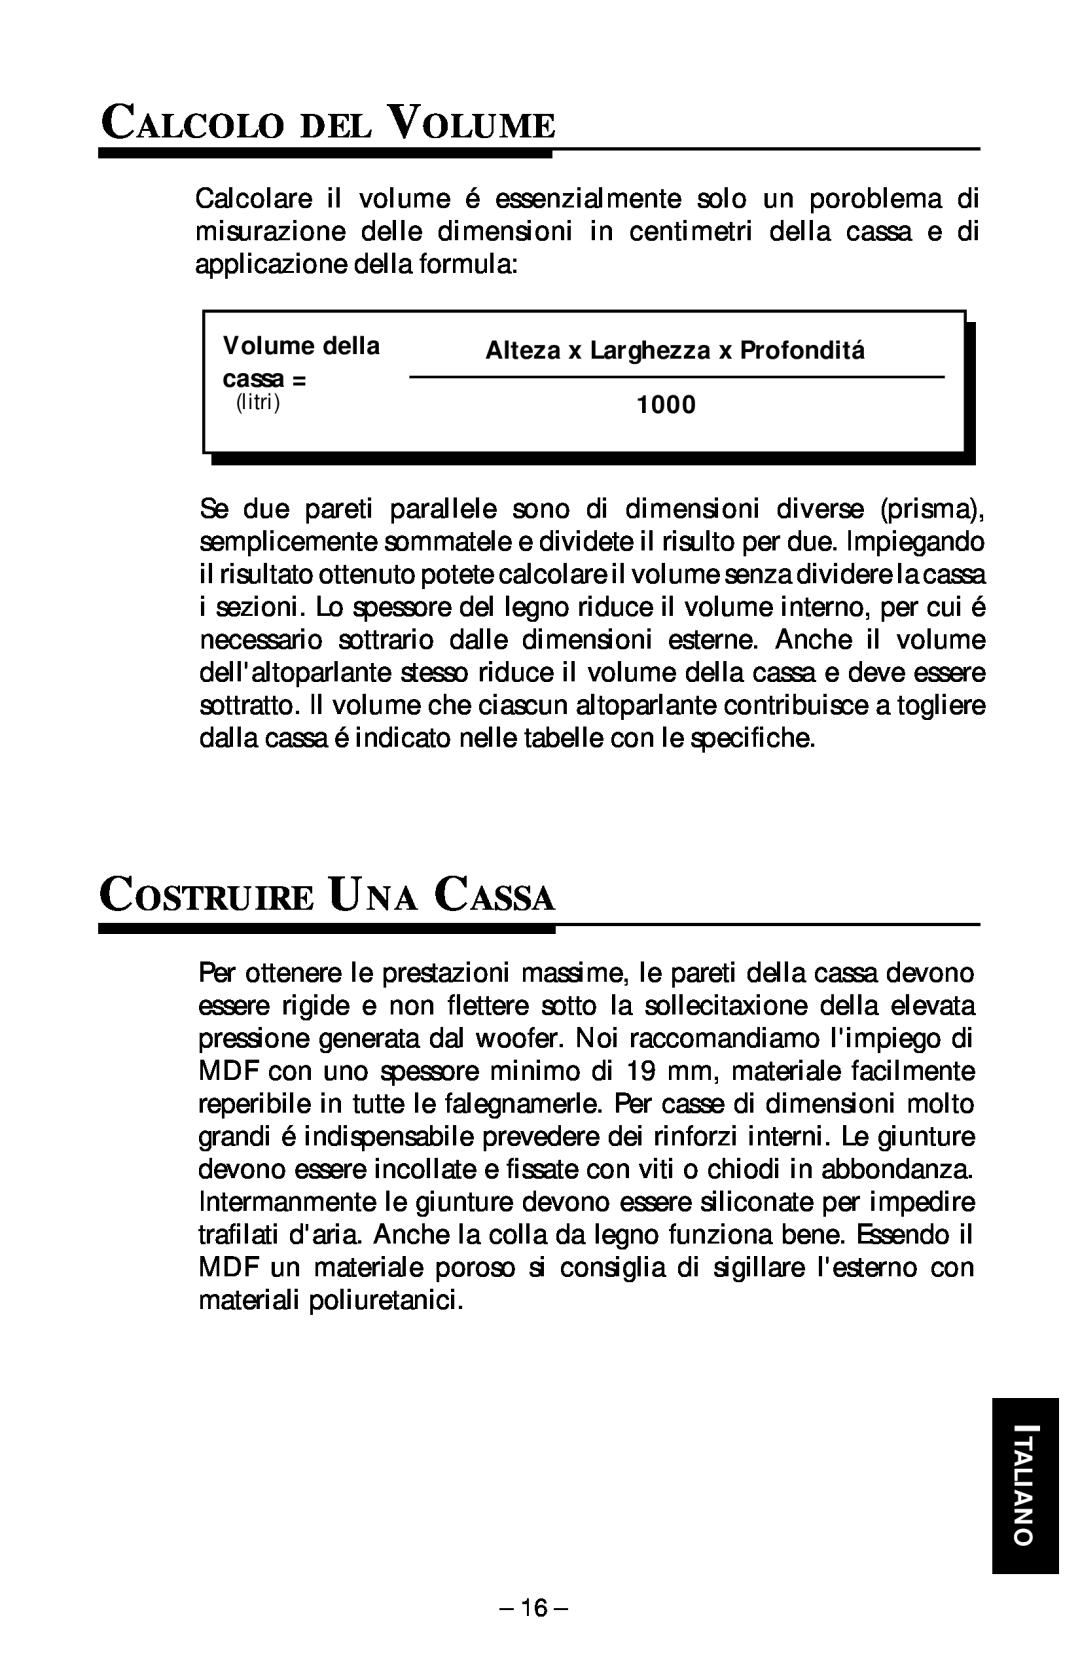 Rockford Fosgate RFP-1410/1810, RFP-1408/1808, RFP-1418/1815 manual Calcolo Del Volume, Costruire Una Cassa, Italiano 